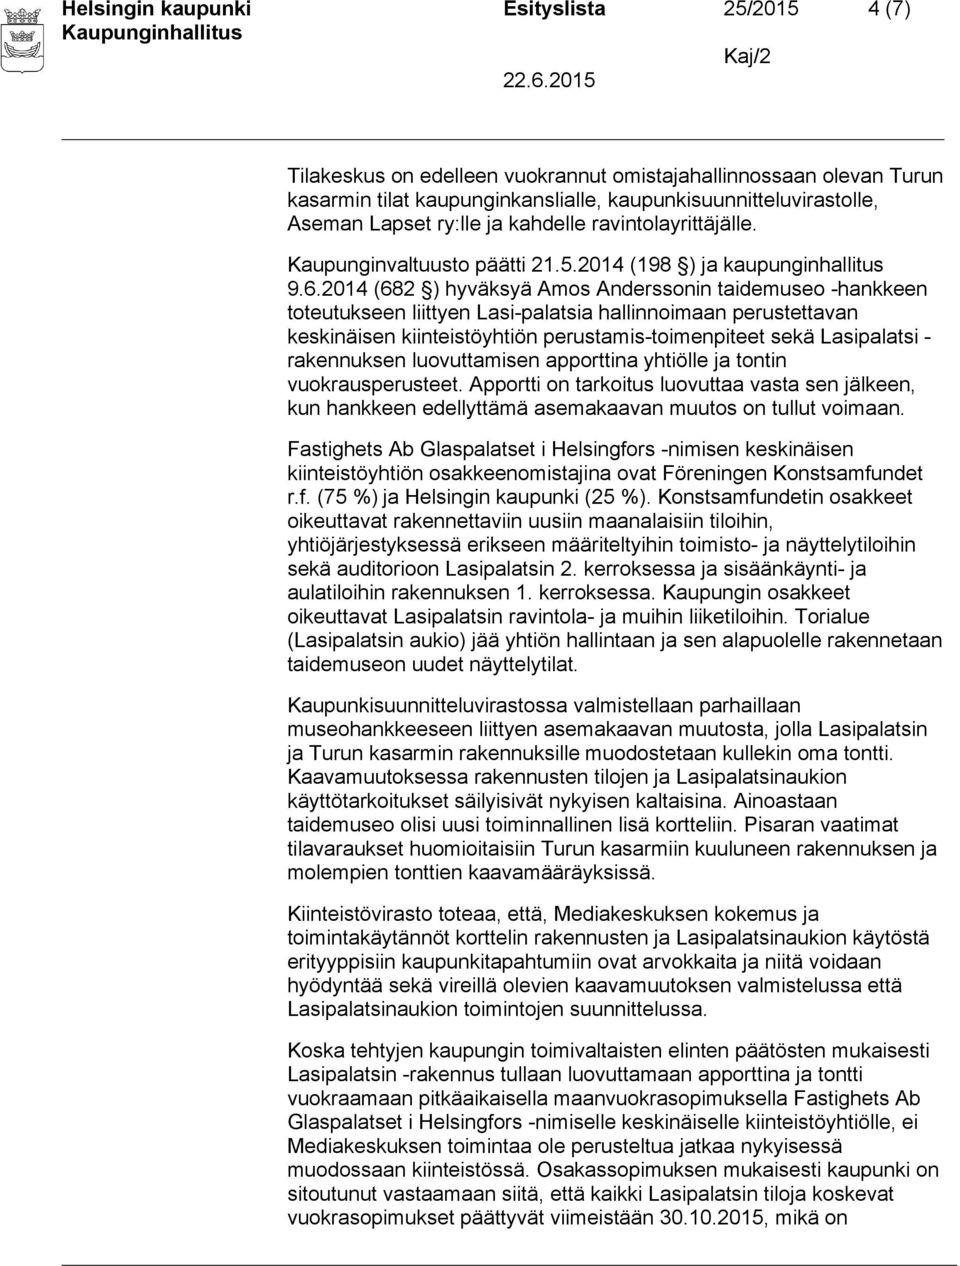 2014 (682 ) hyväksyä Amos Anderssonin taidemuseo -hankkeen toteutukseen liittyen Lasi-palatsia hallinnoimaan perustettavan keskinäisen kiinteistöyhtiön perustamis-toimenpiteet sekä Lasipalatsi -